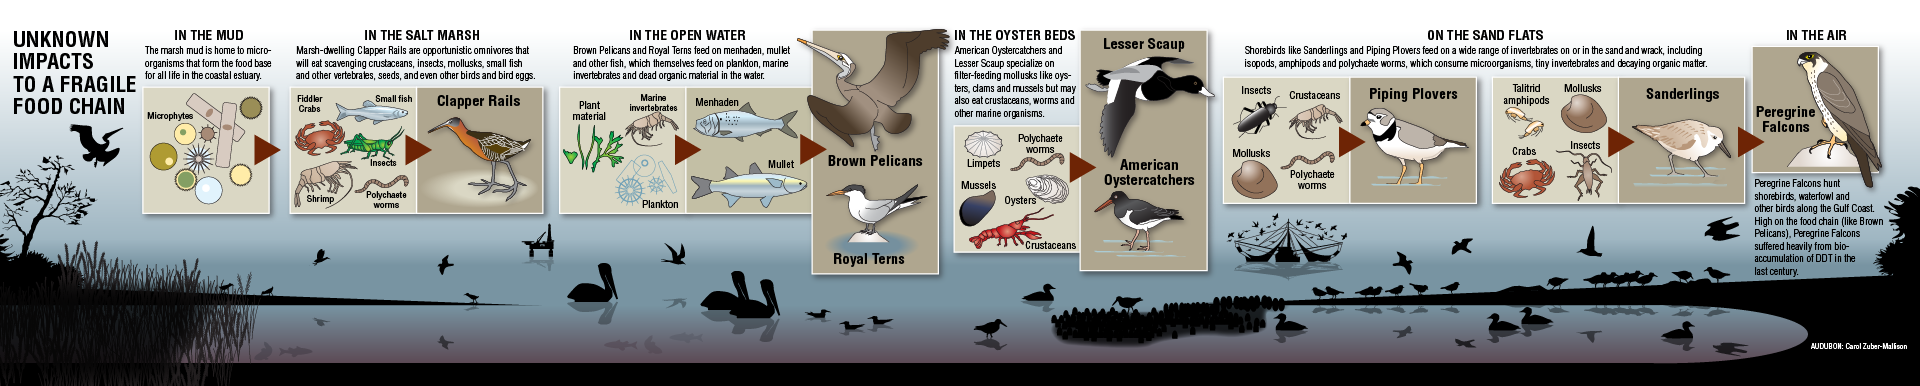 Audubon infographic showing bird species affected by Deepwater Horizon oil spill